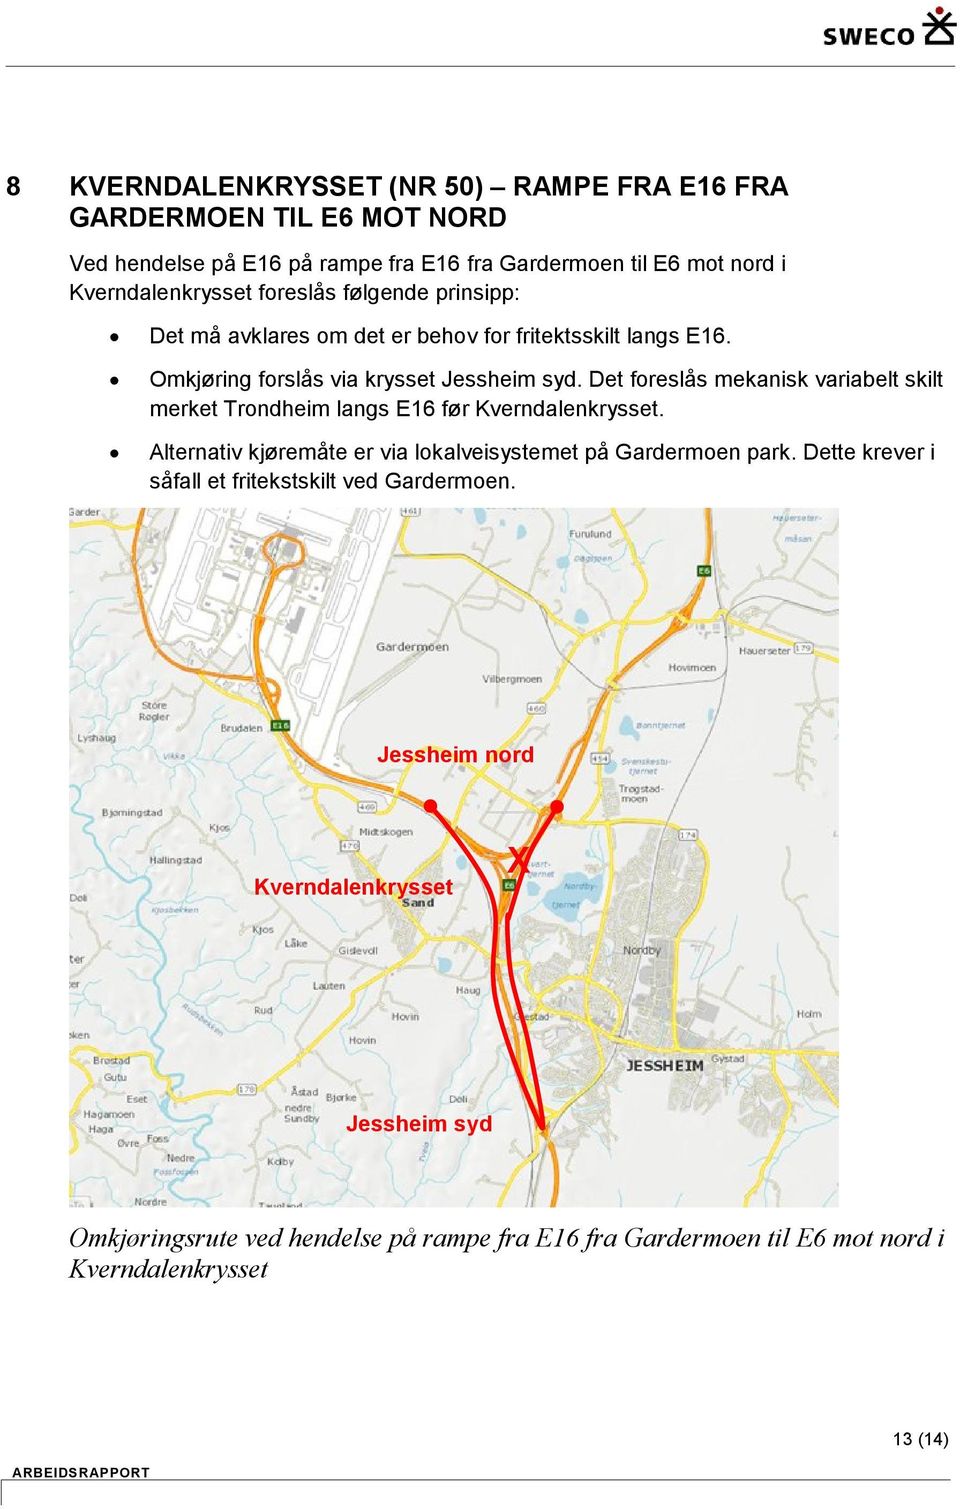 Det foreslås mekanisk variabelt skilt merket Trondheim langs E16 før. Alternativ kjøremåte er via lokalveisystemet på Gardermoen park.